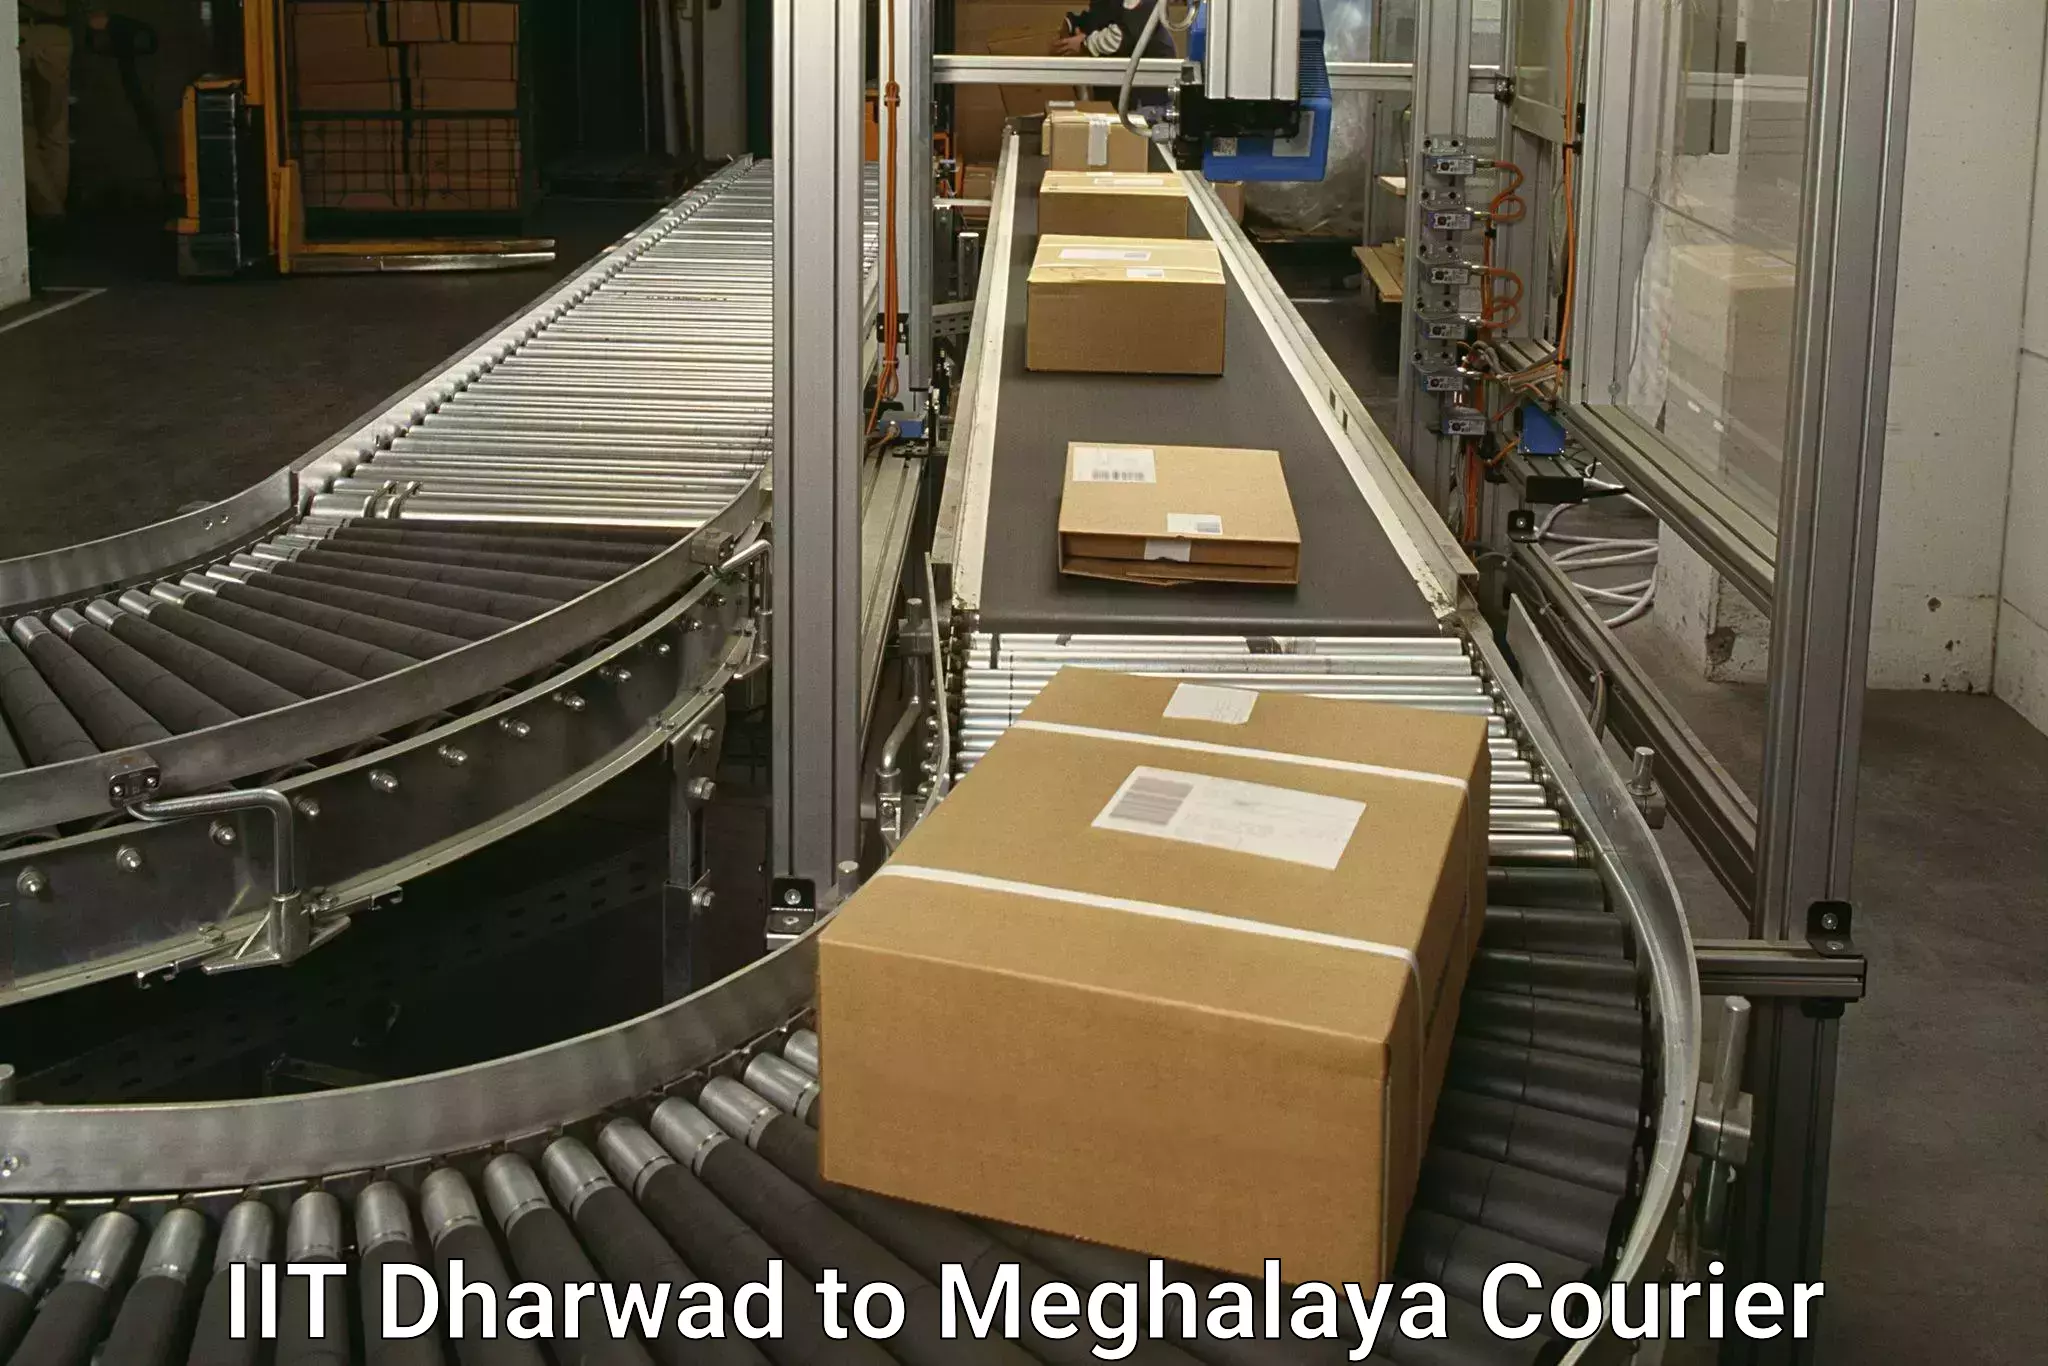 Next-day delivery options IIT Dharwad to NIT Meghalaya